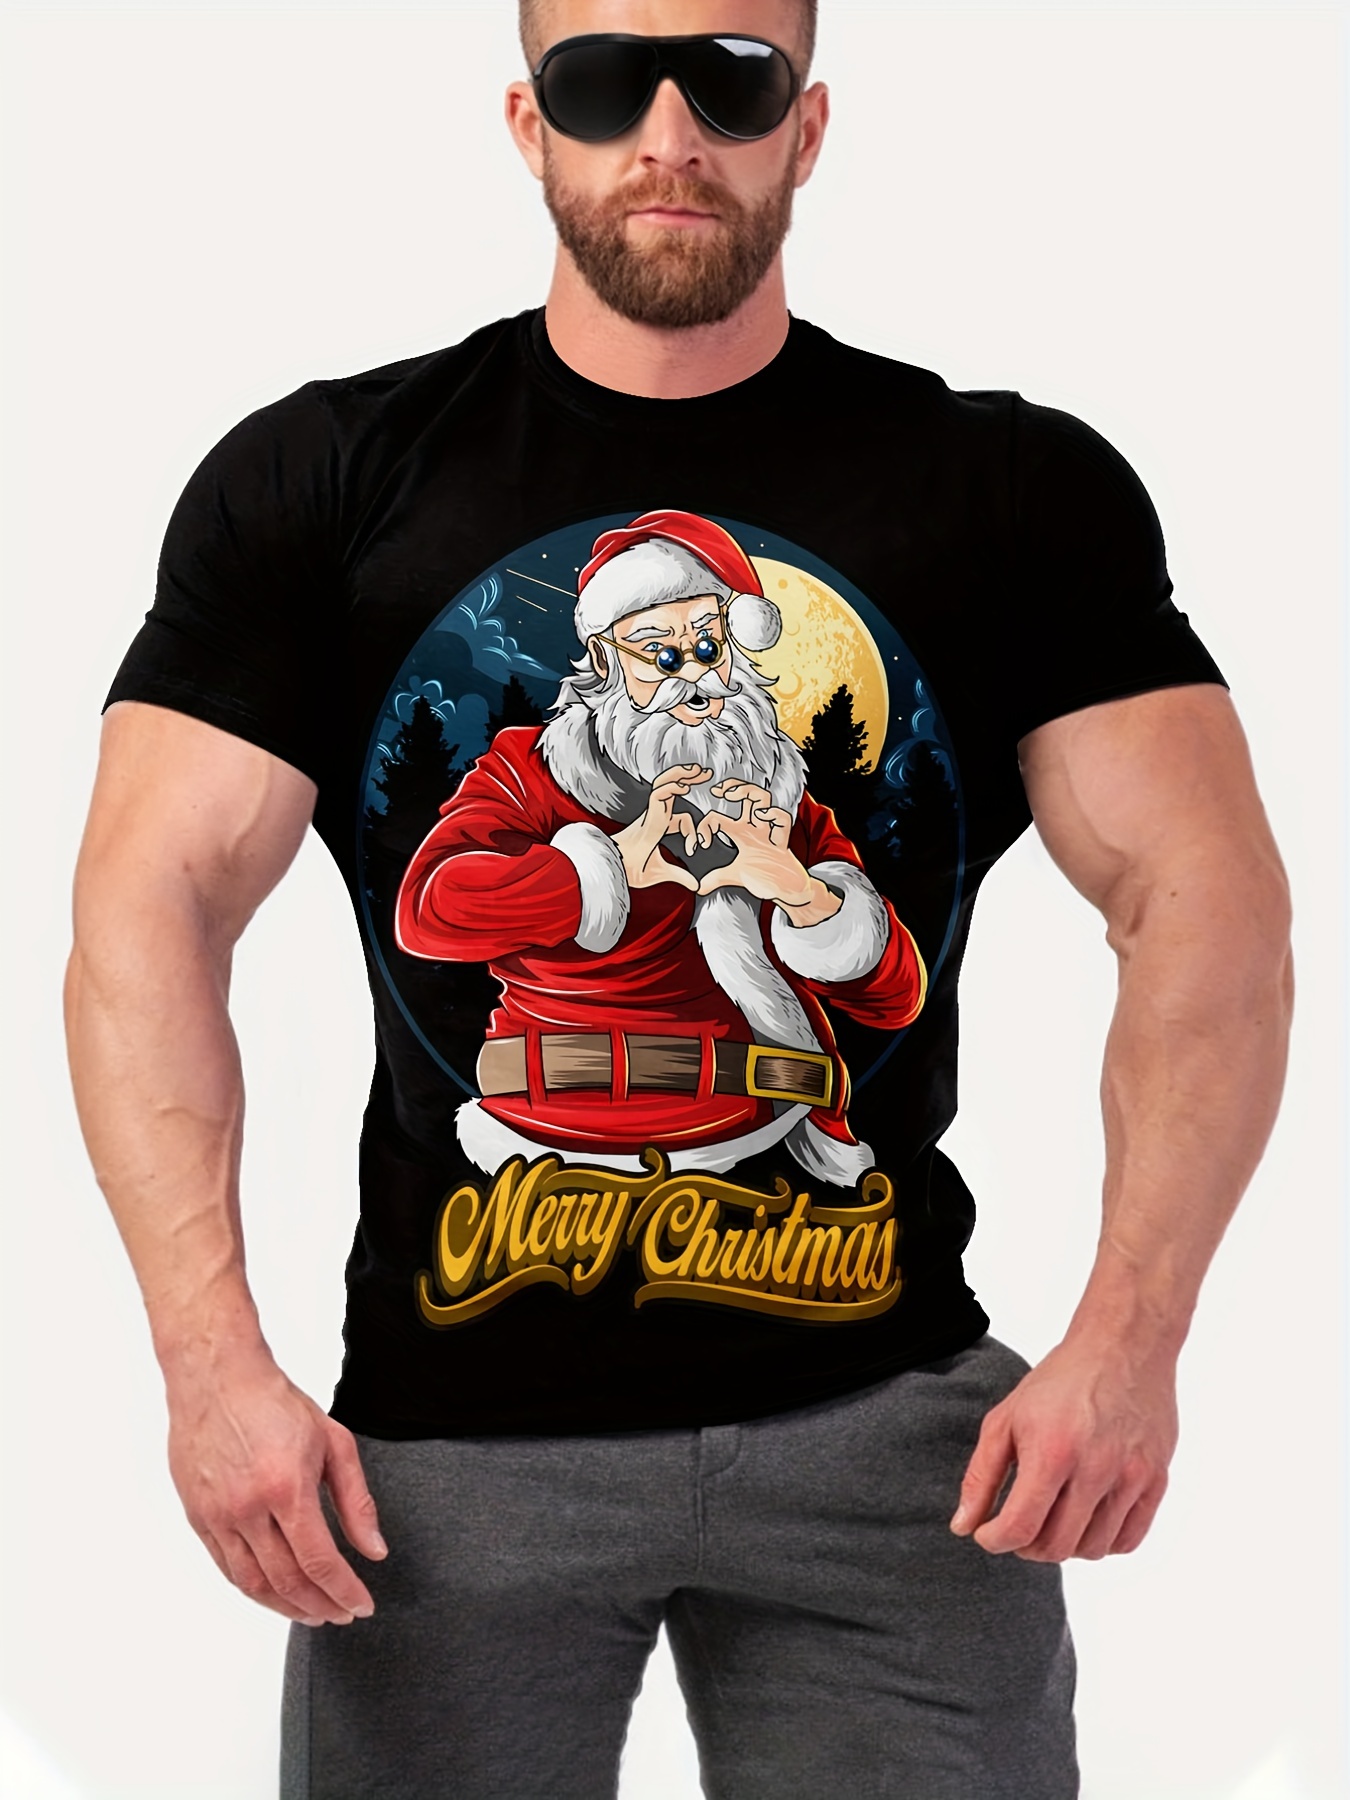 Camisetas hombre originales, regalos de Navidad